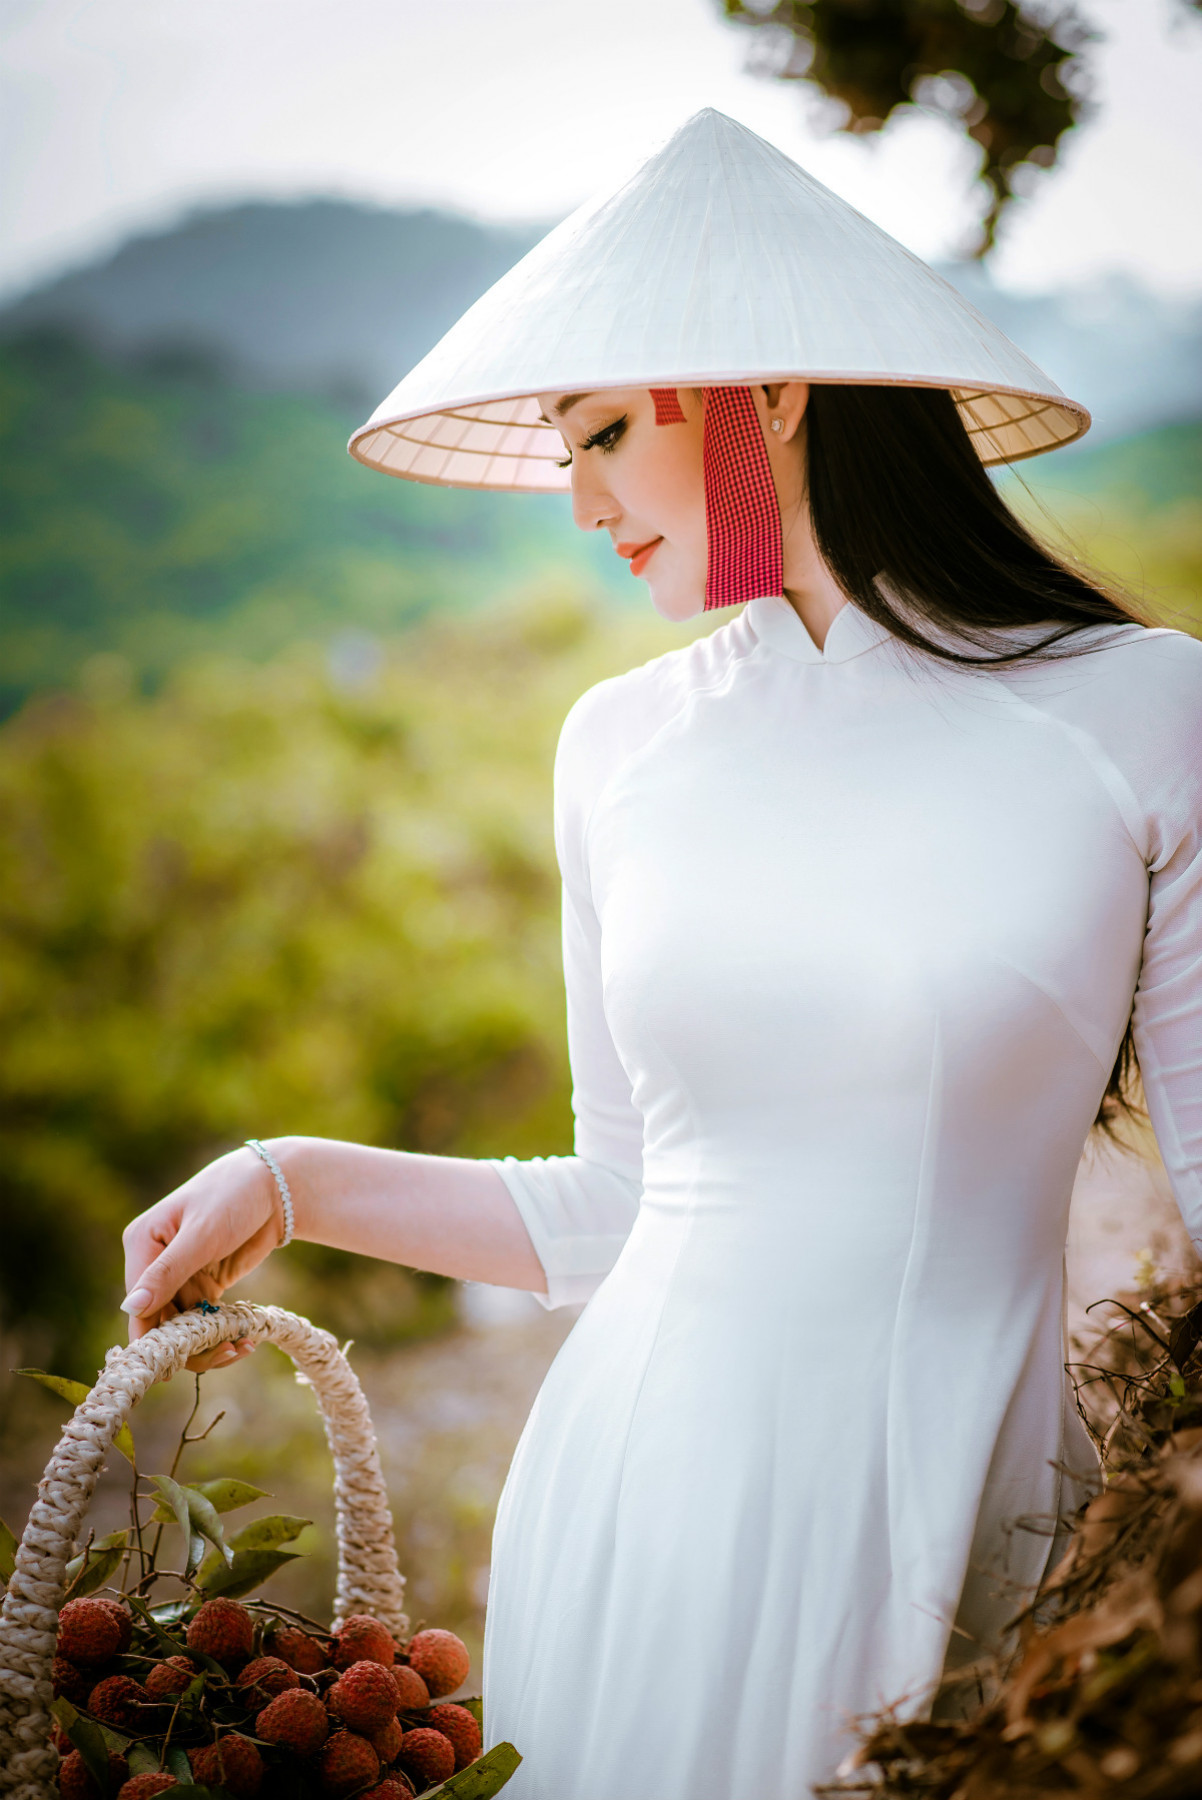 Bộ ảnh này được Julia Wedding thực hiện tại đồi vải Lục Ngạn (Bắc Giang). Trong tà áo dài trắng muốt, người đẹp nổi bật giữa màu xanh của lá, màu đỏ của quả chín, tạo thành một bức tranh mùa hạ rực rỡ mà nên thơ.